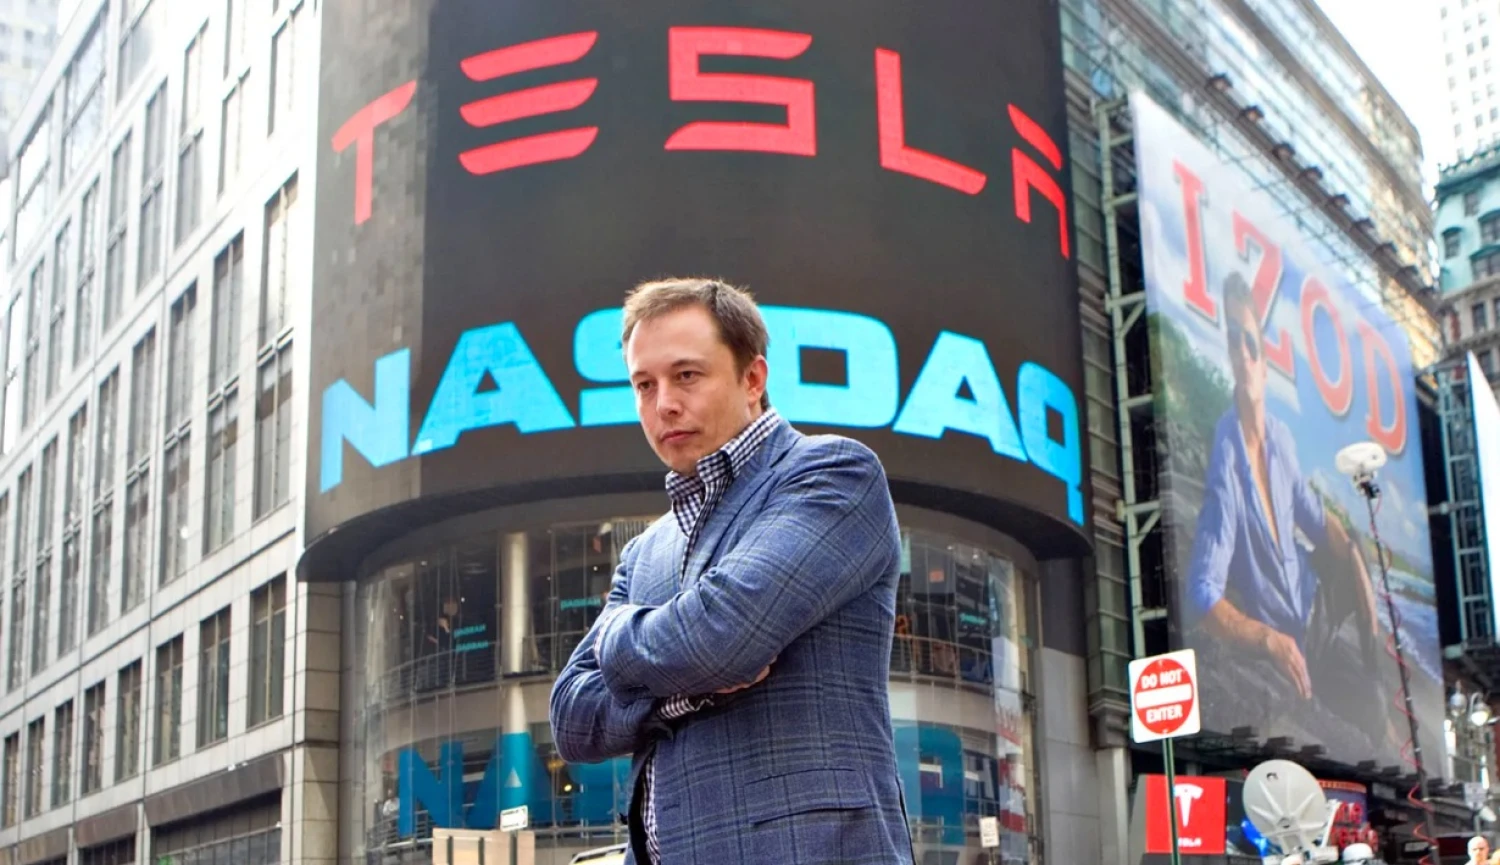 Dostupnější Tesla. Musk chce v Německu vyrábět levnější elektromobily